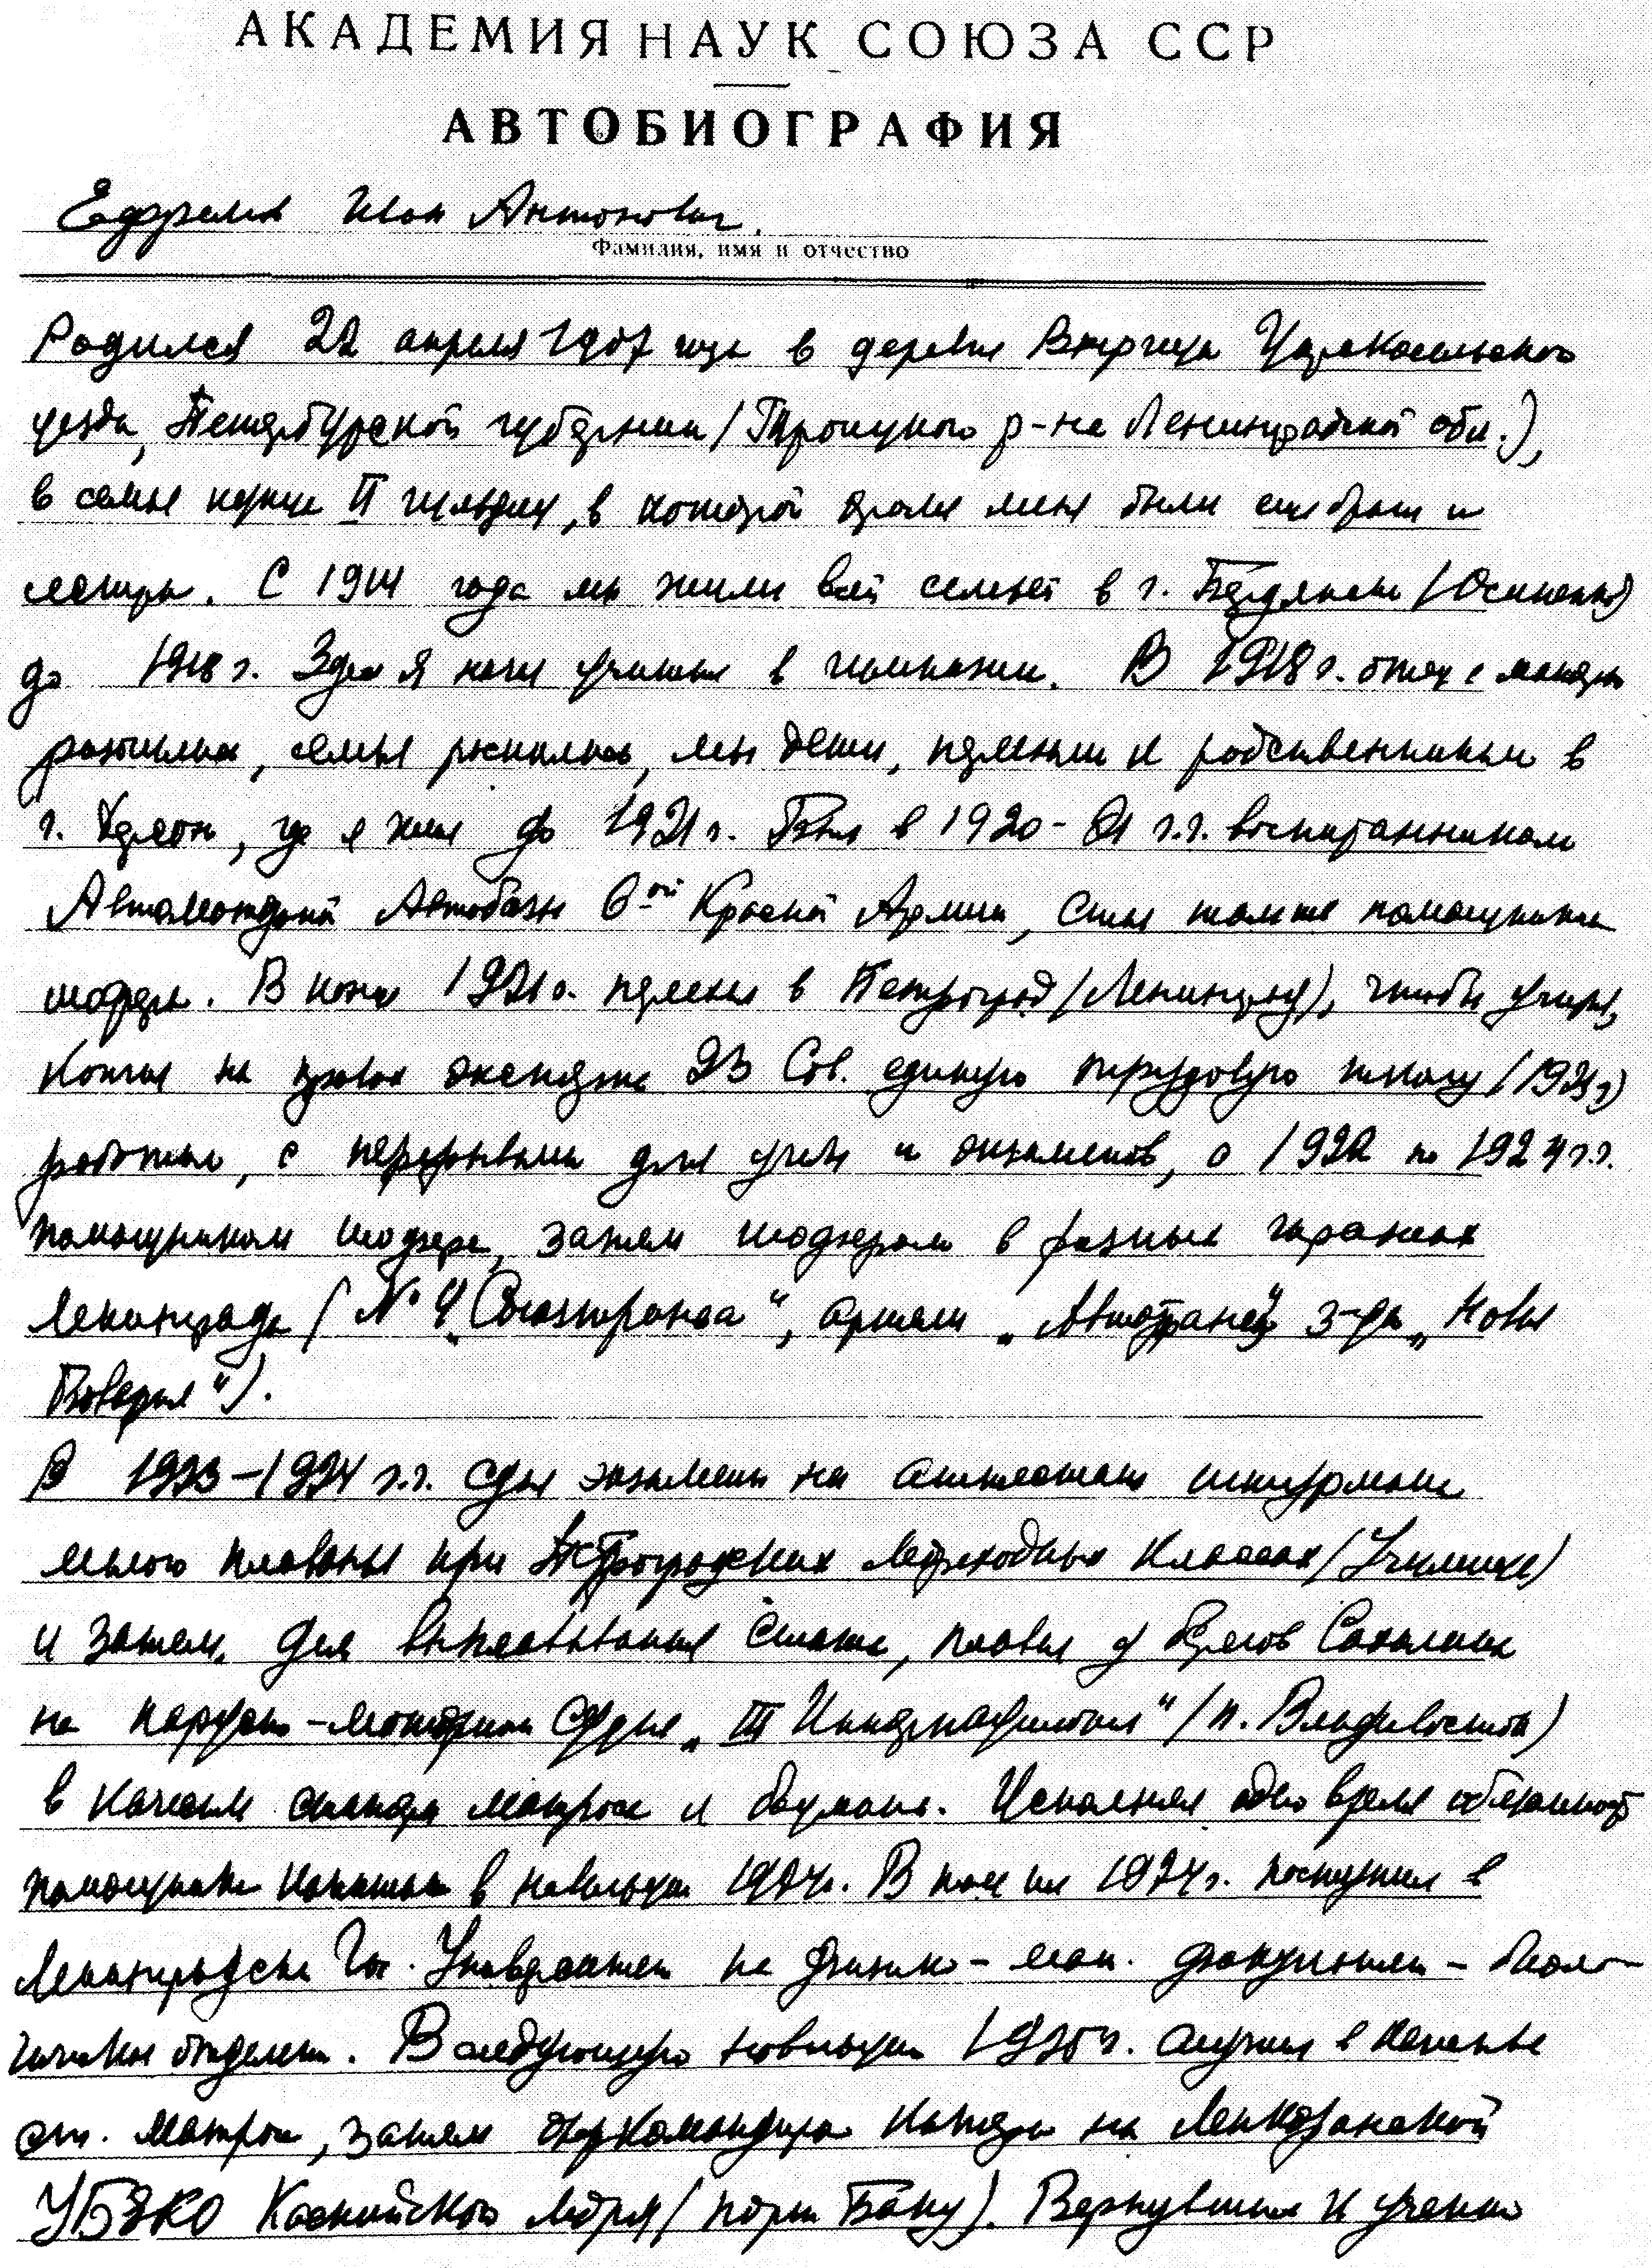 Первый лист автобиографии ученого (1953 г.)